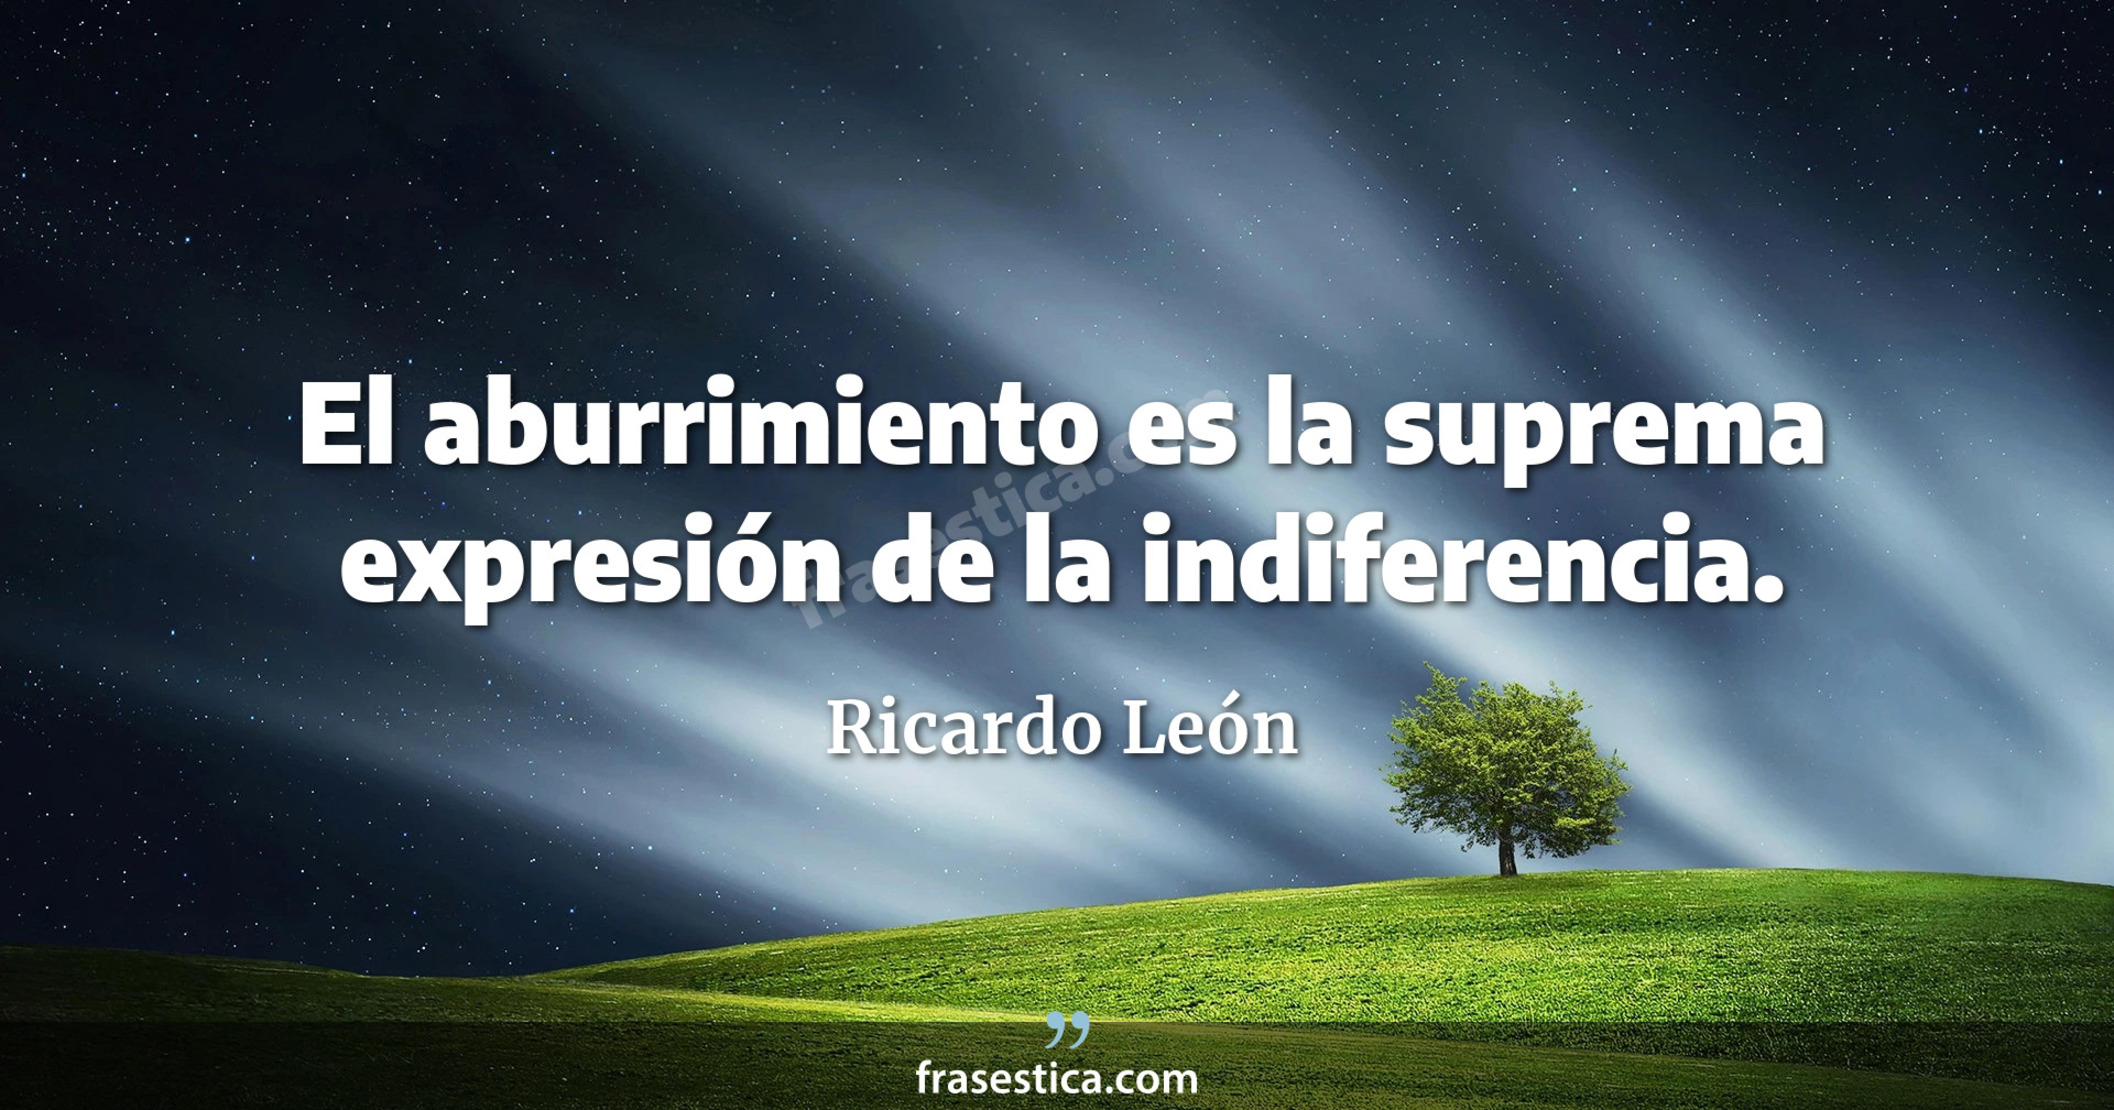 El aburrimiento es la suprema expresión de la indiferencia. - Ricardo León